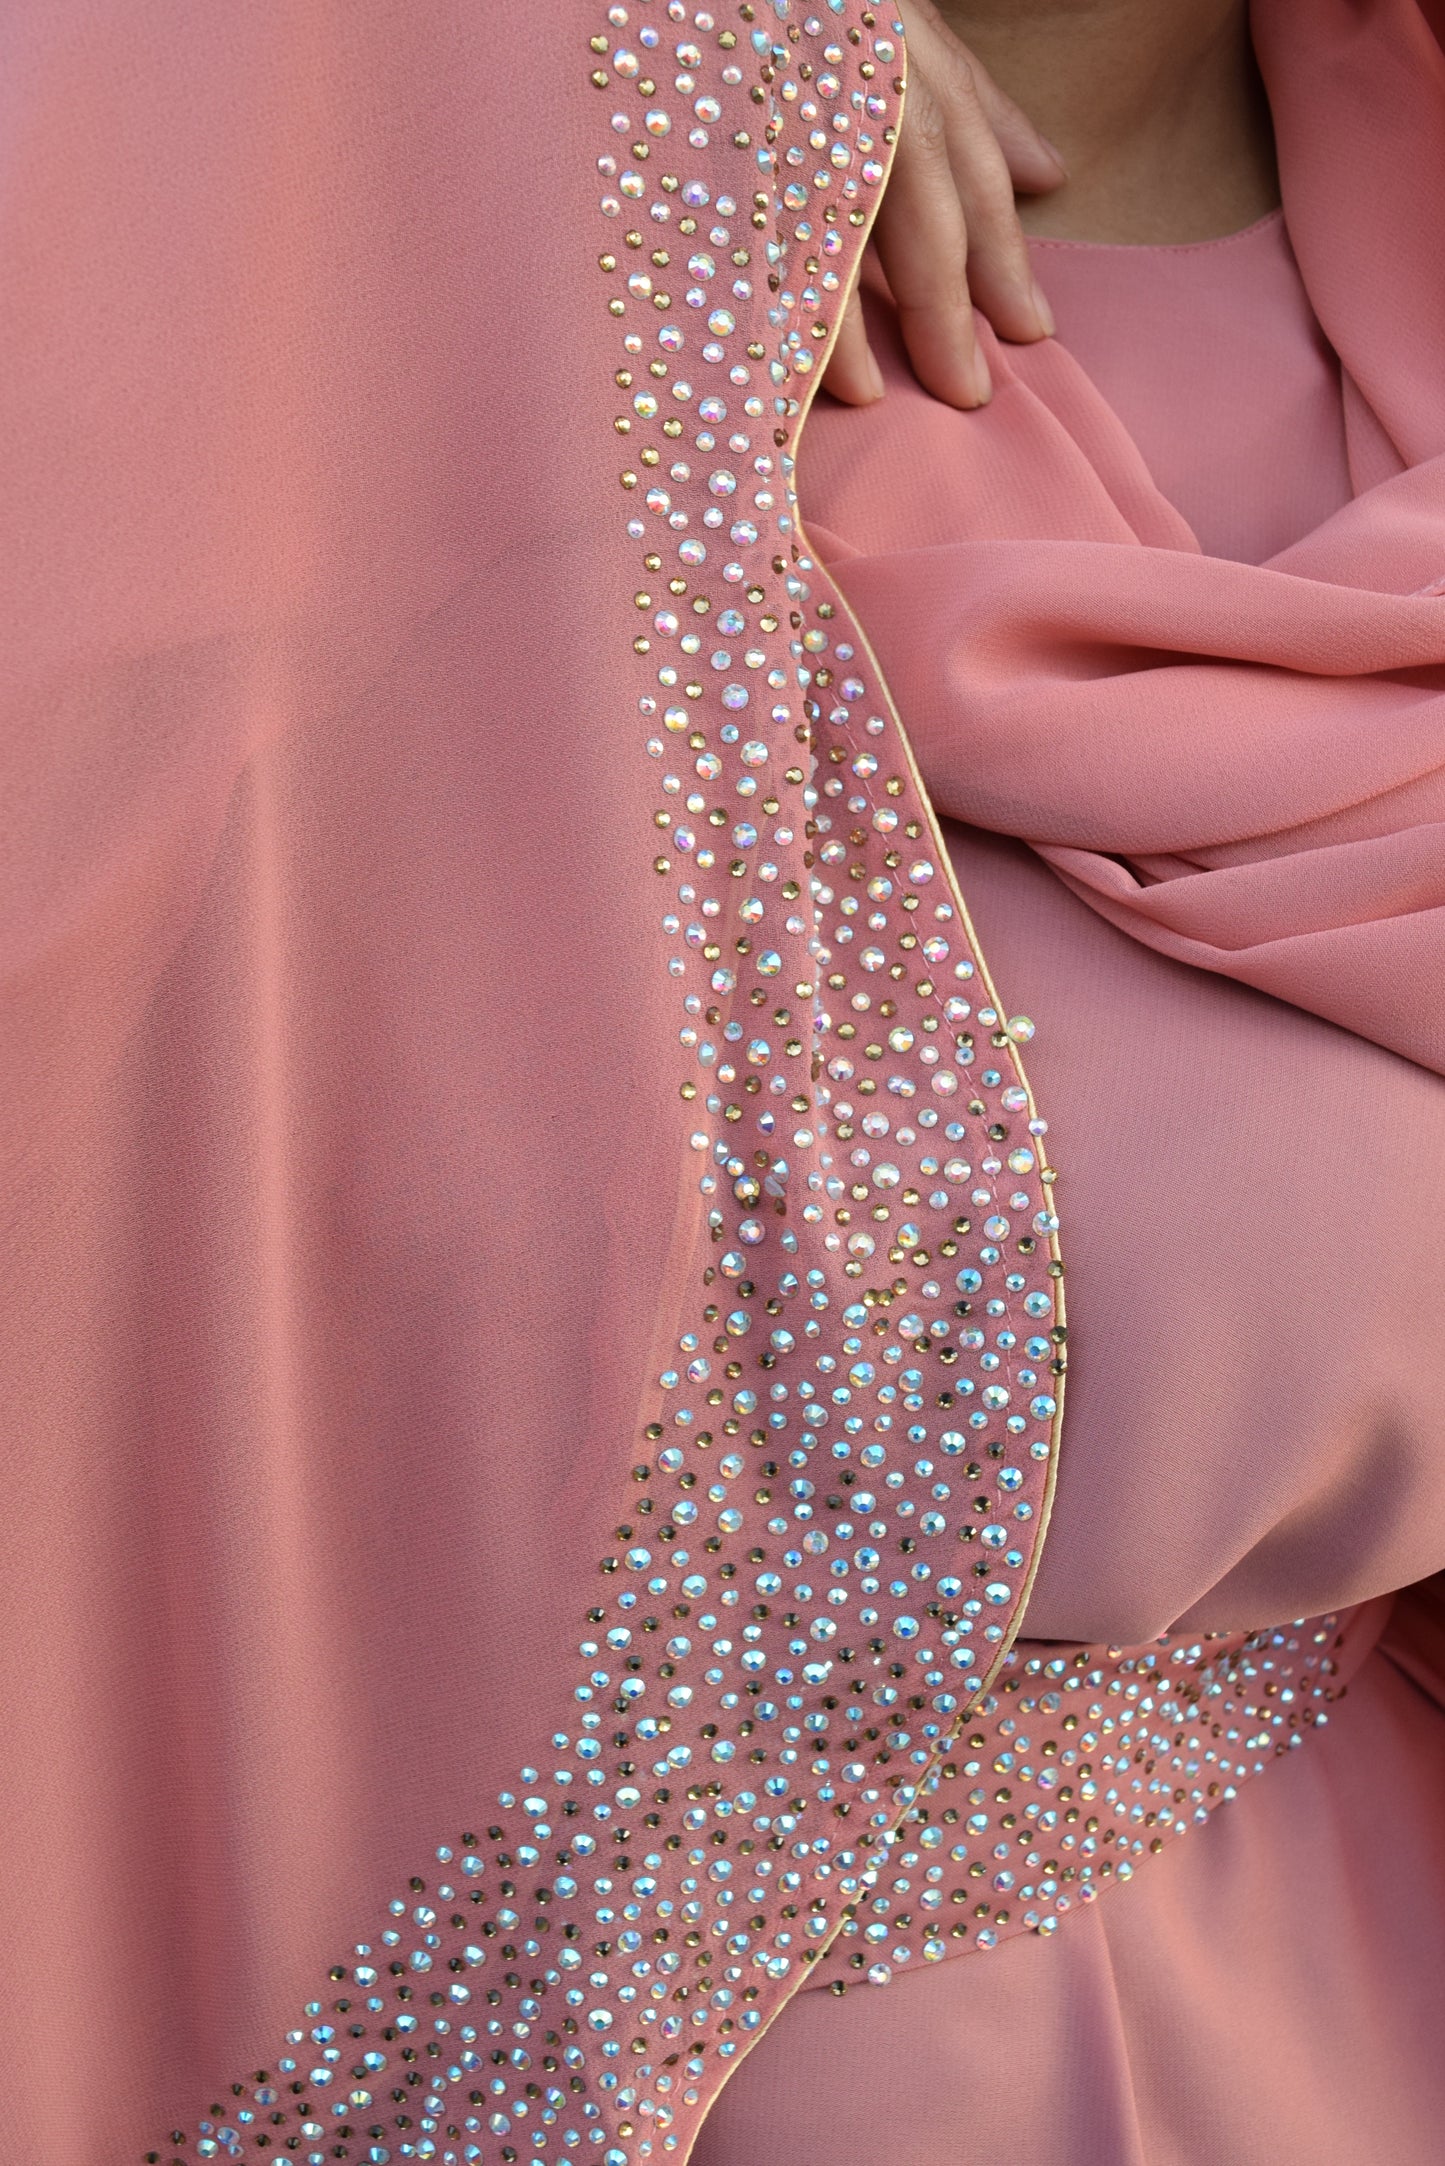 Layla chiffon jacket abaya Coral Pink -  4 piece abaya set